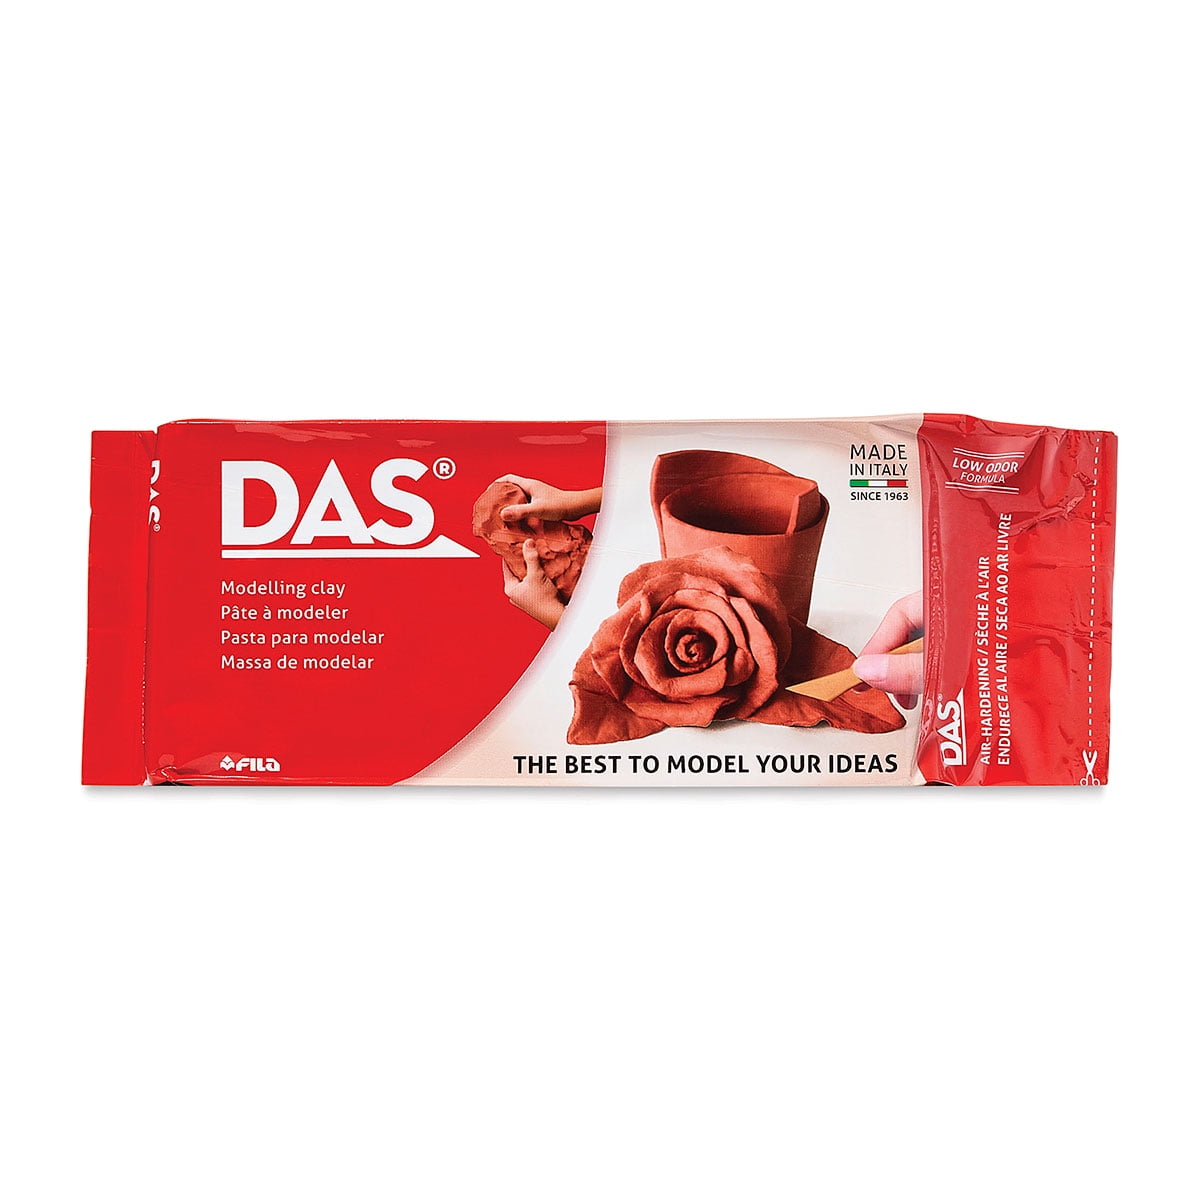 DAS Air Dry Clay - White 17.6oz or 2.2lb